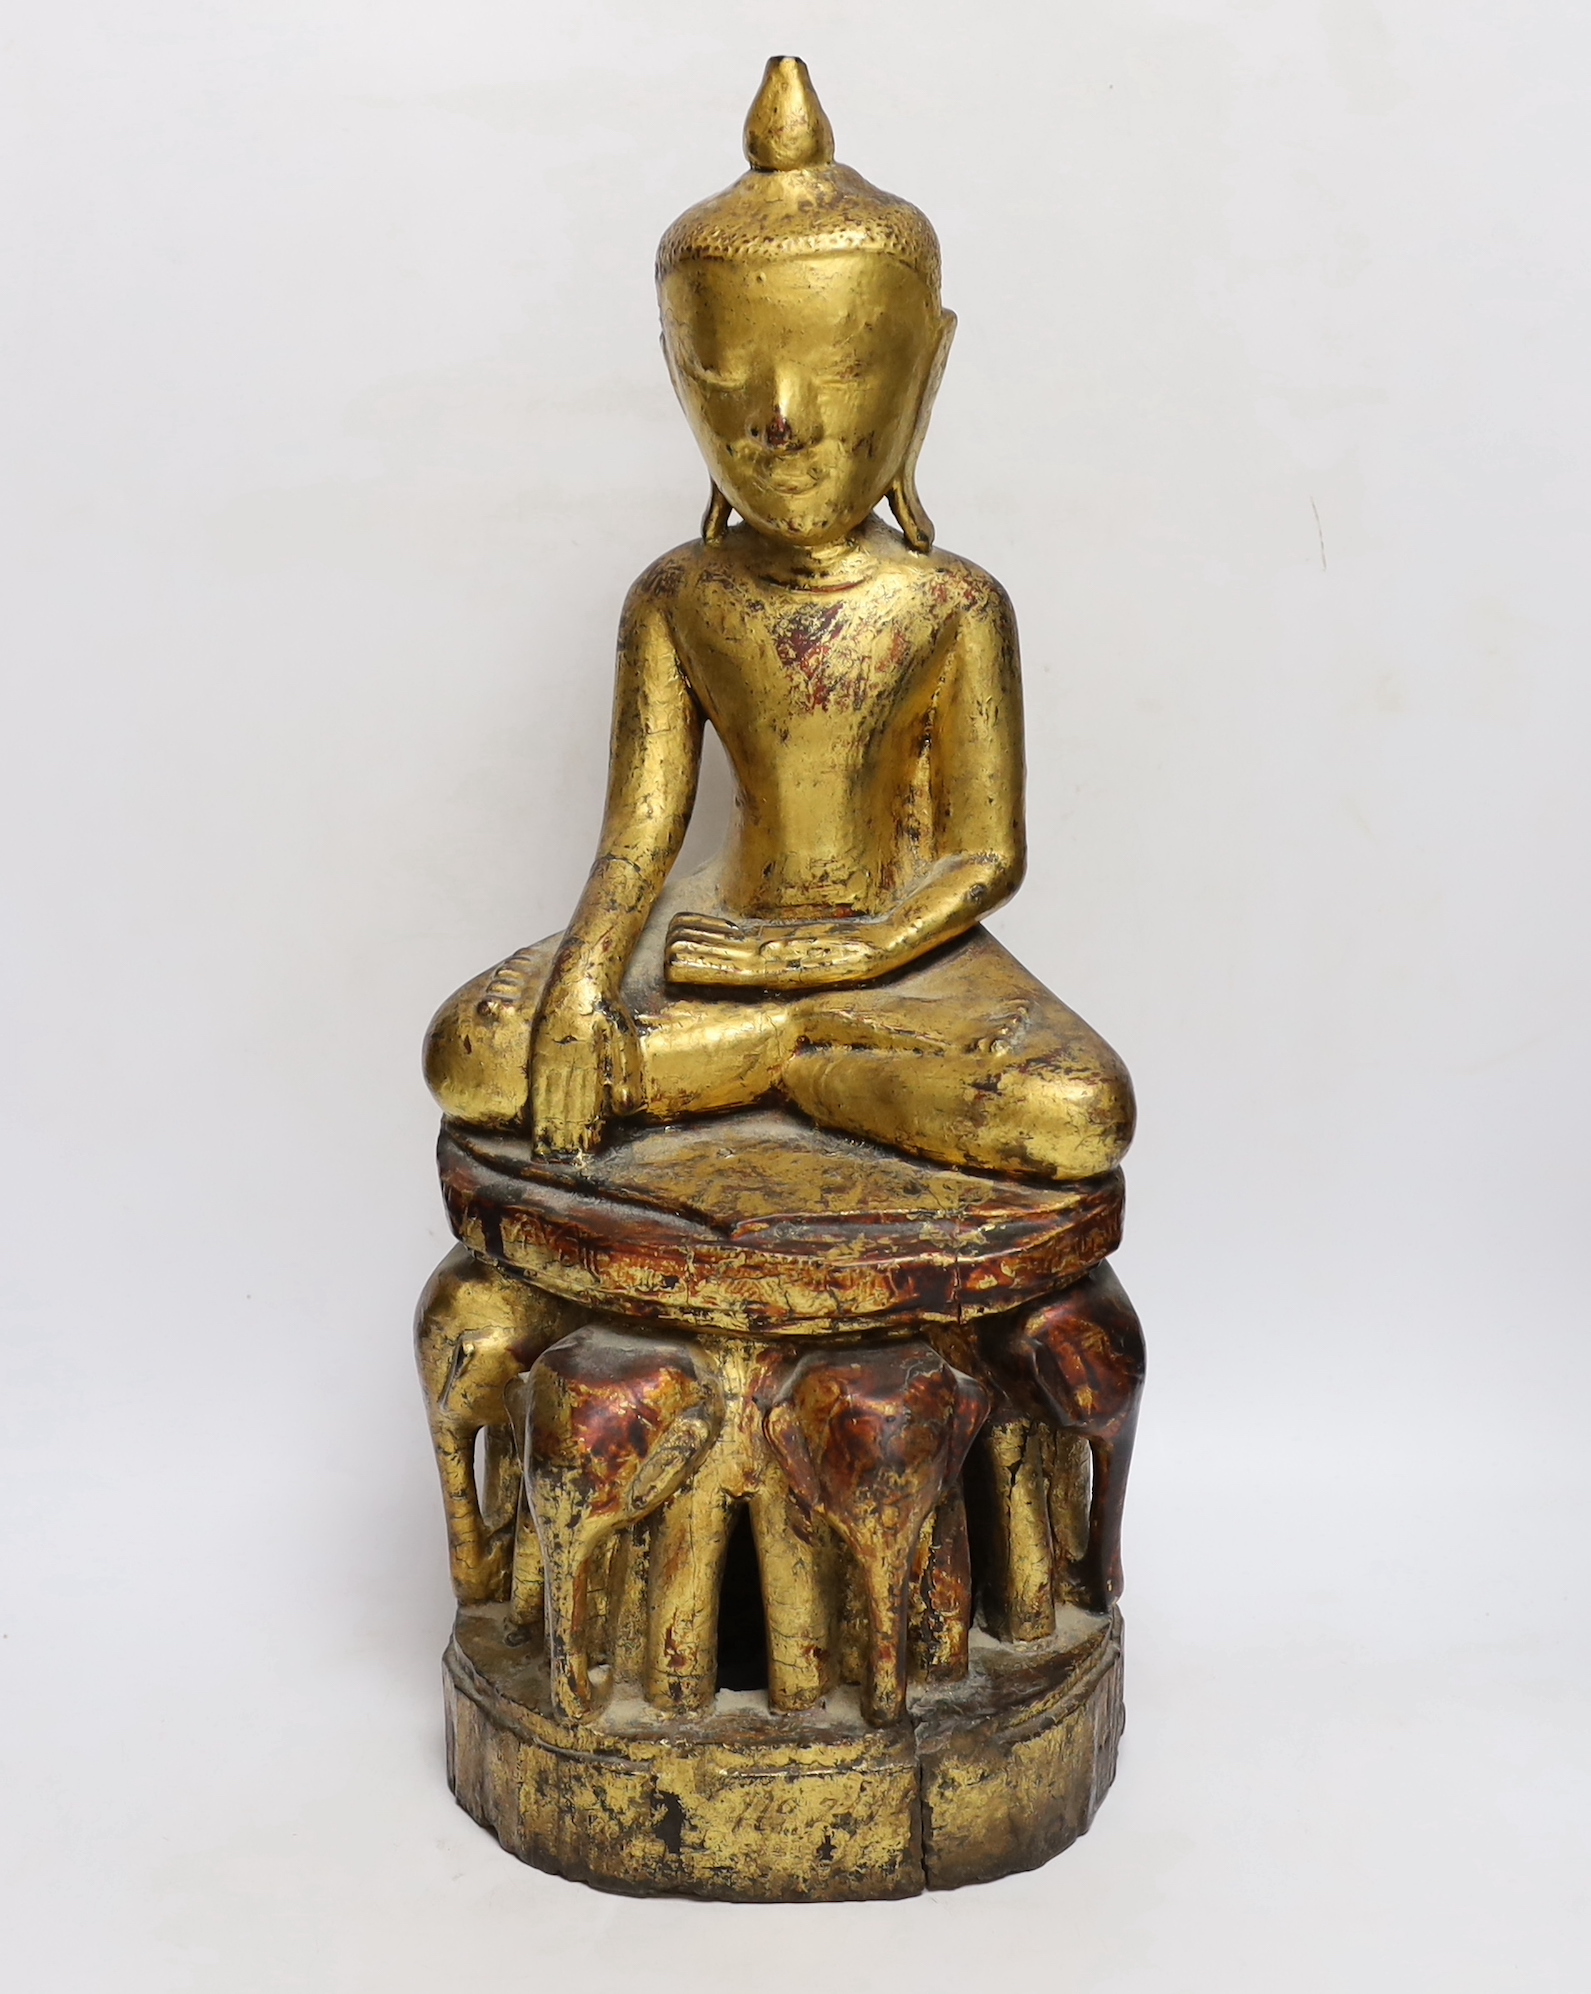 A 19th century Burmese or Thai giltwood figure of Buddha, on an elephant throne, 52cm